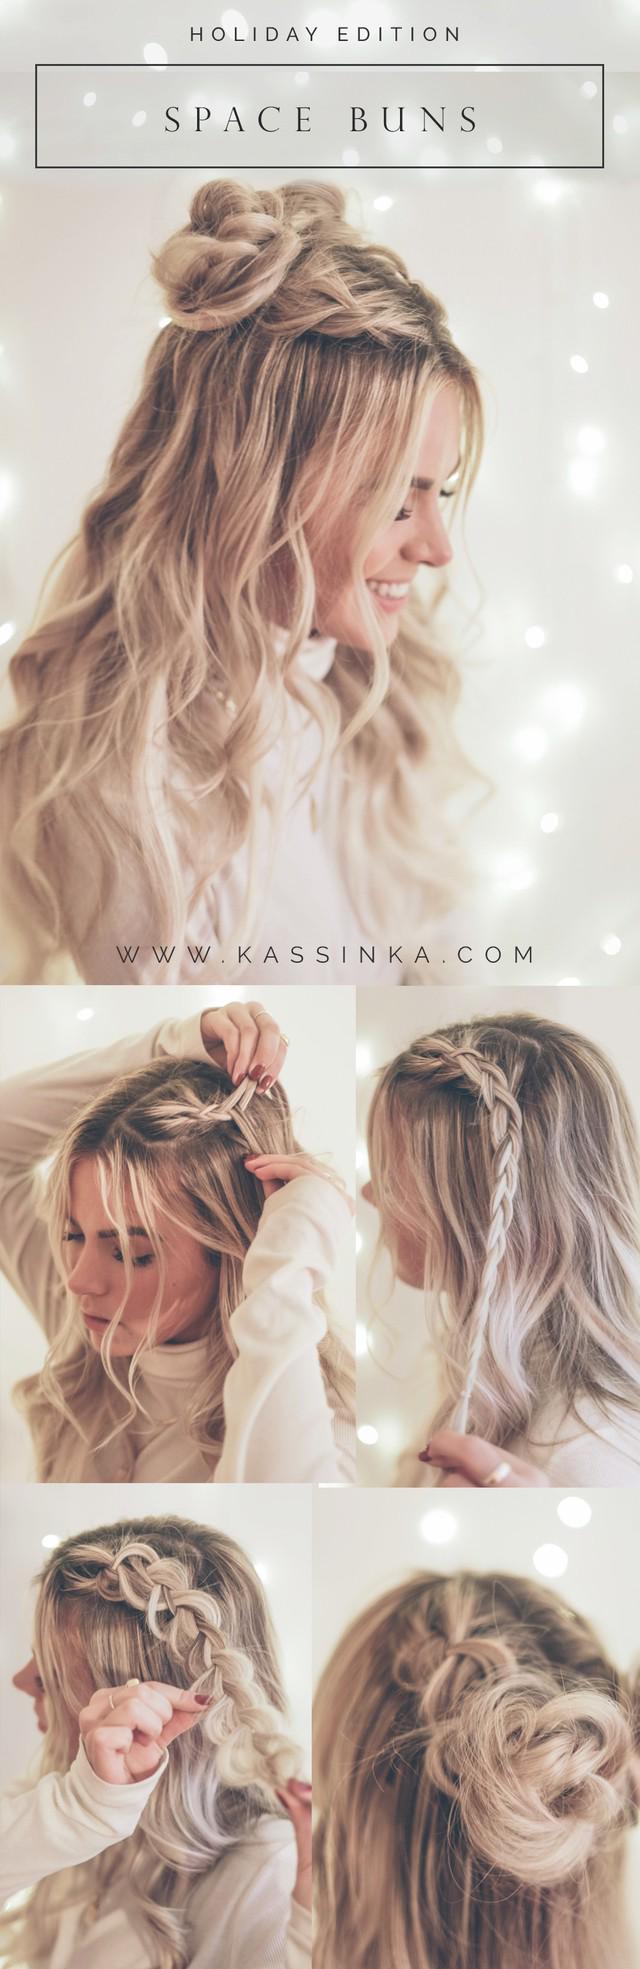 รูปภาพ:http://www.kassinka.com/wp-content/uploads/2018/12/Kassinka-Hair-Tutorial-Vlogmas-05.jpg